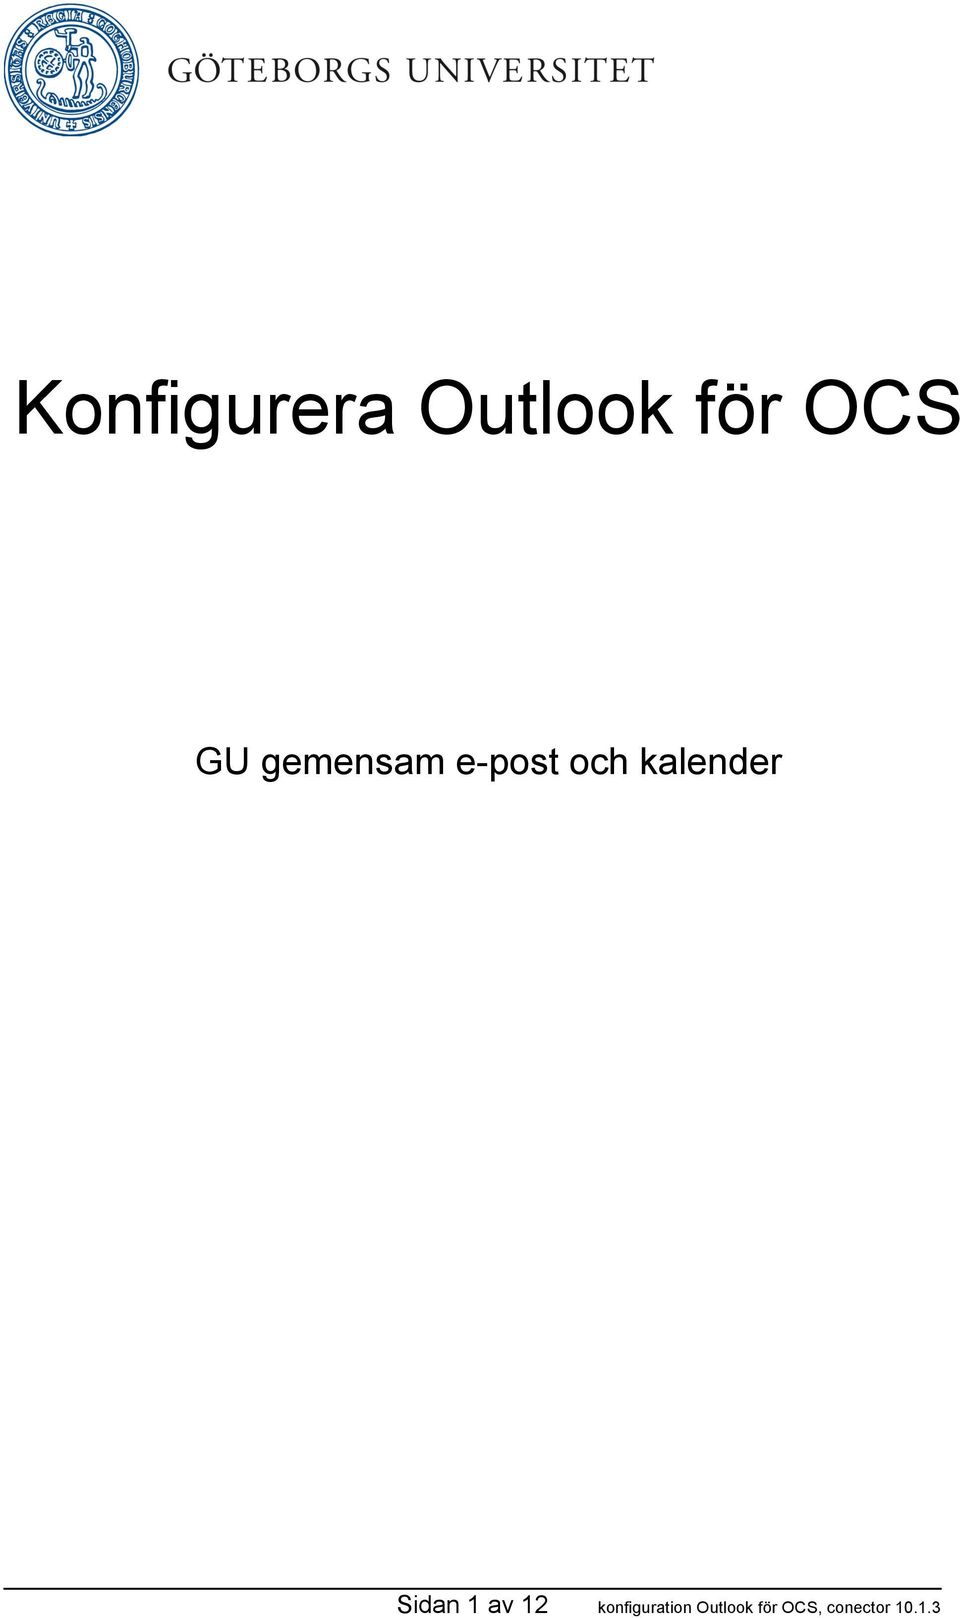 Konfigurera Outlook för OCS - PDF Free Download